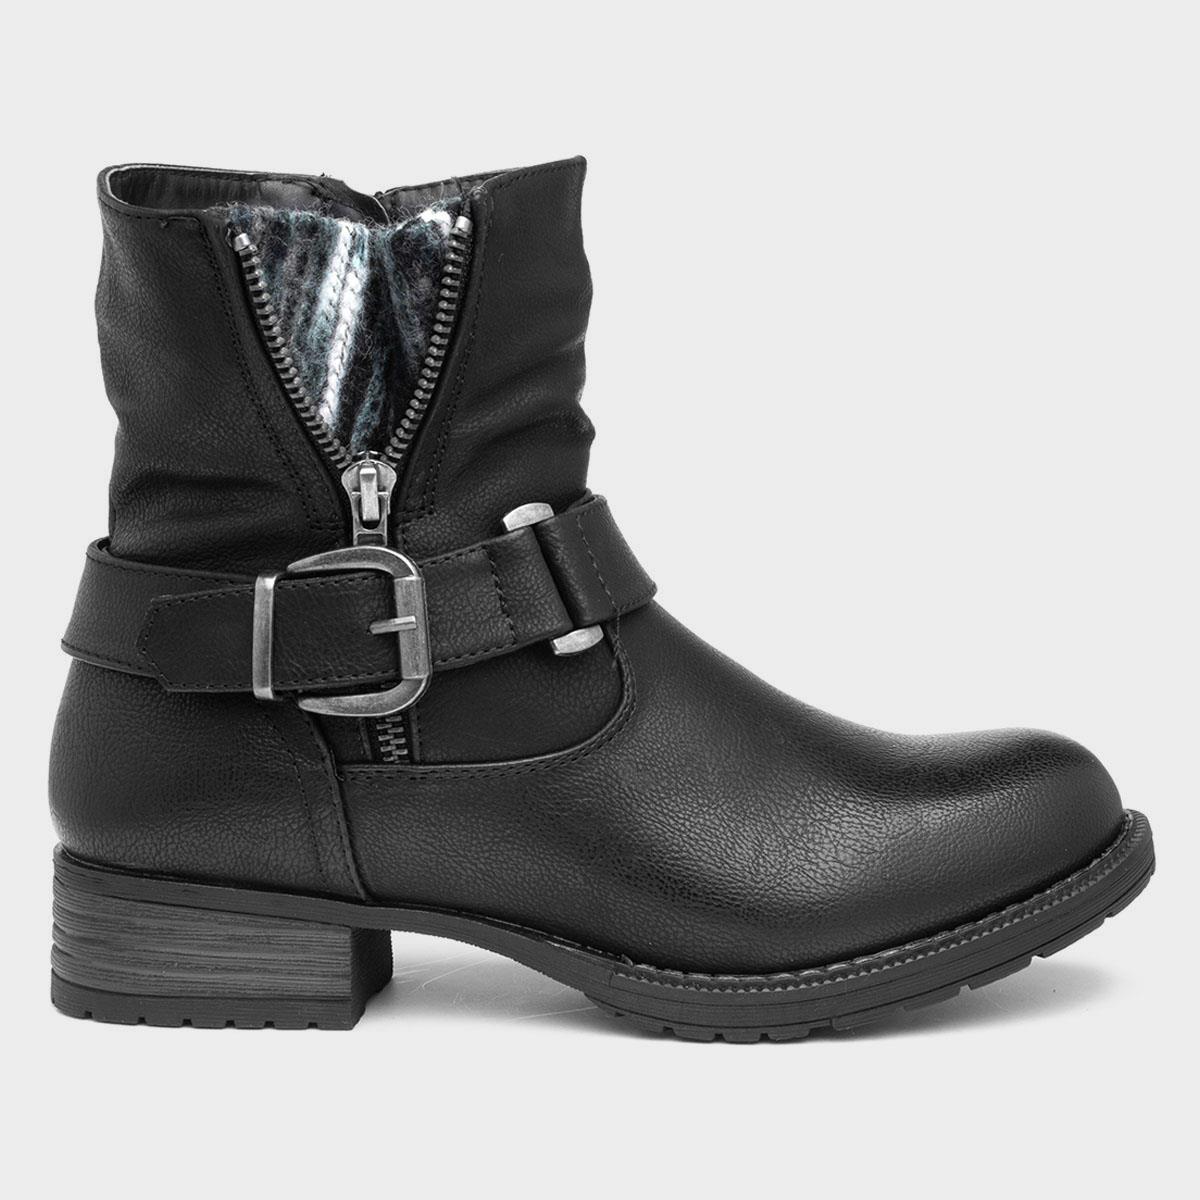 Lilley & Skinner Denmark Womens Black Ankle Boot-185141 | Shoe Zone